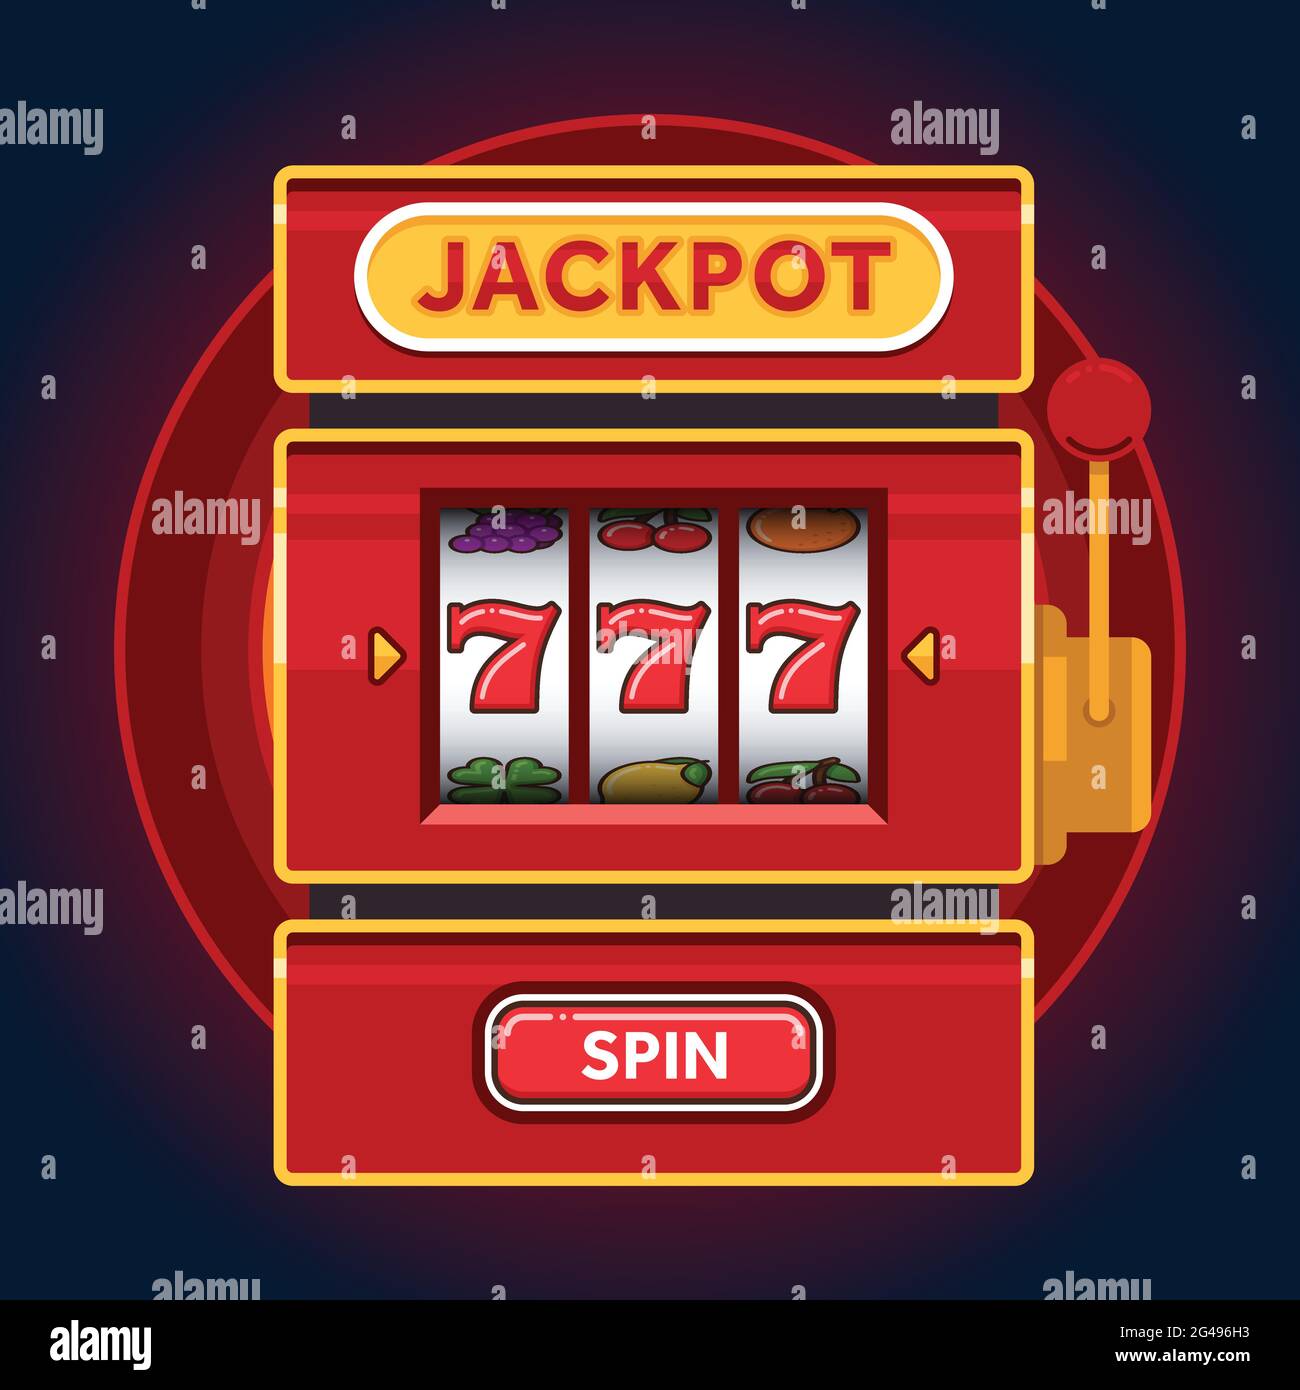 Jackpot en la ruleta: qué es y cómo funciona